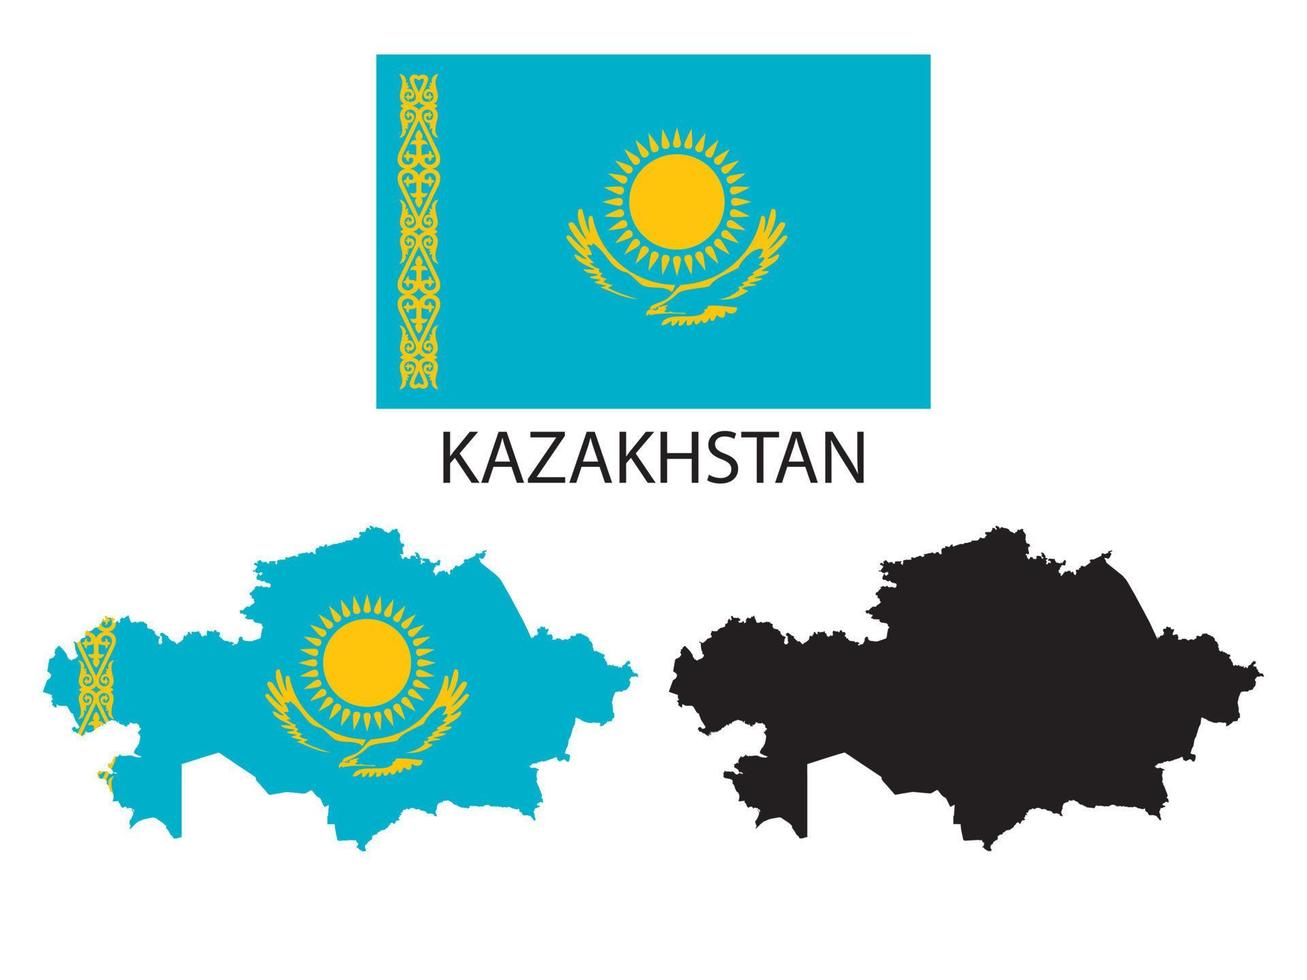 Kazakistan bandiera e carta geografica illustrazione vettore